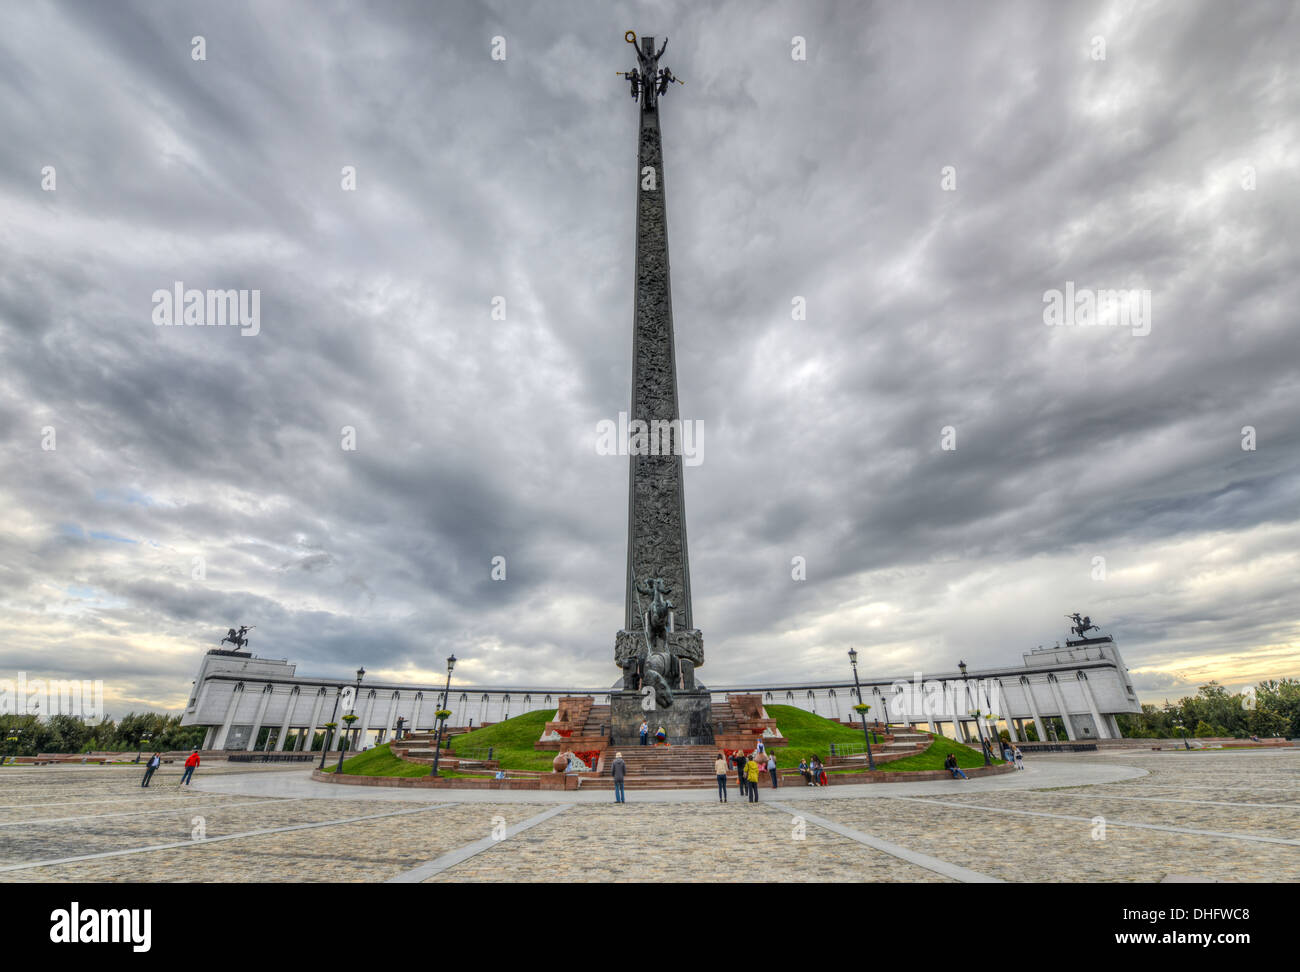 La Colina Poklonnaya Obelisco, en el parque Victoria, Moscú, Rusia. Estatua  de Nike en la parte superior de San Jorge matando un dragón a continuación.  Commem Fotografía de stock - Alamy